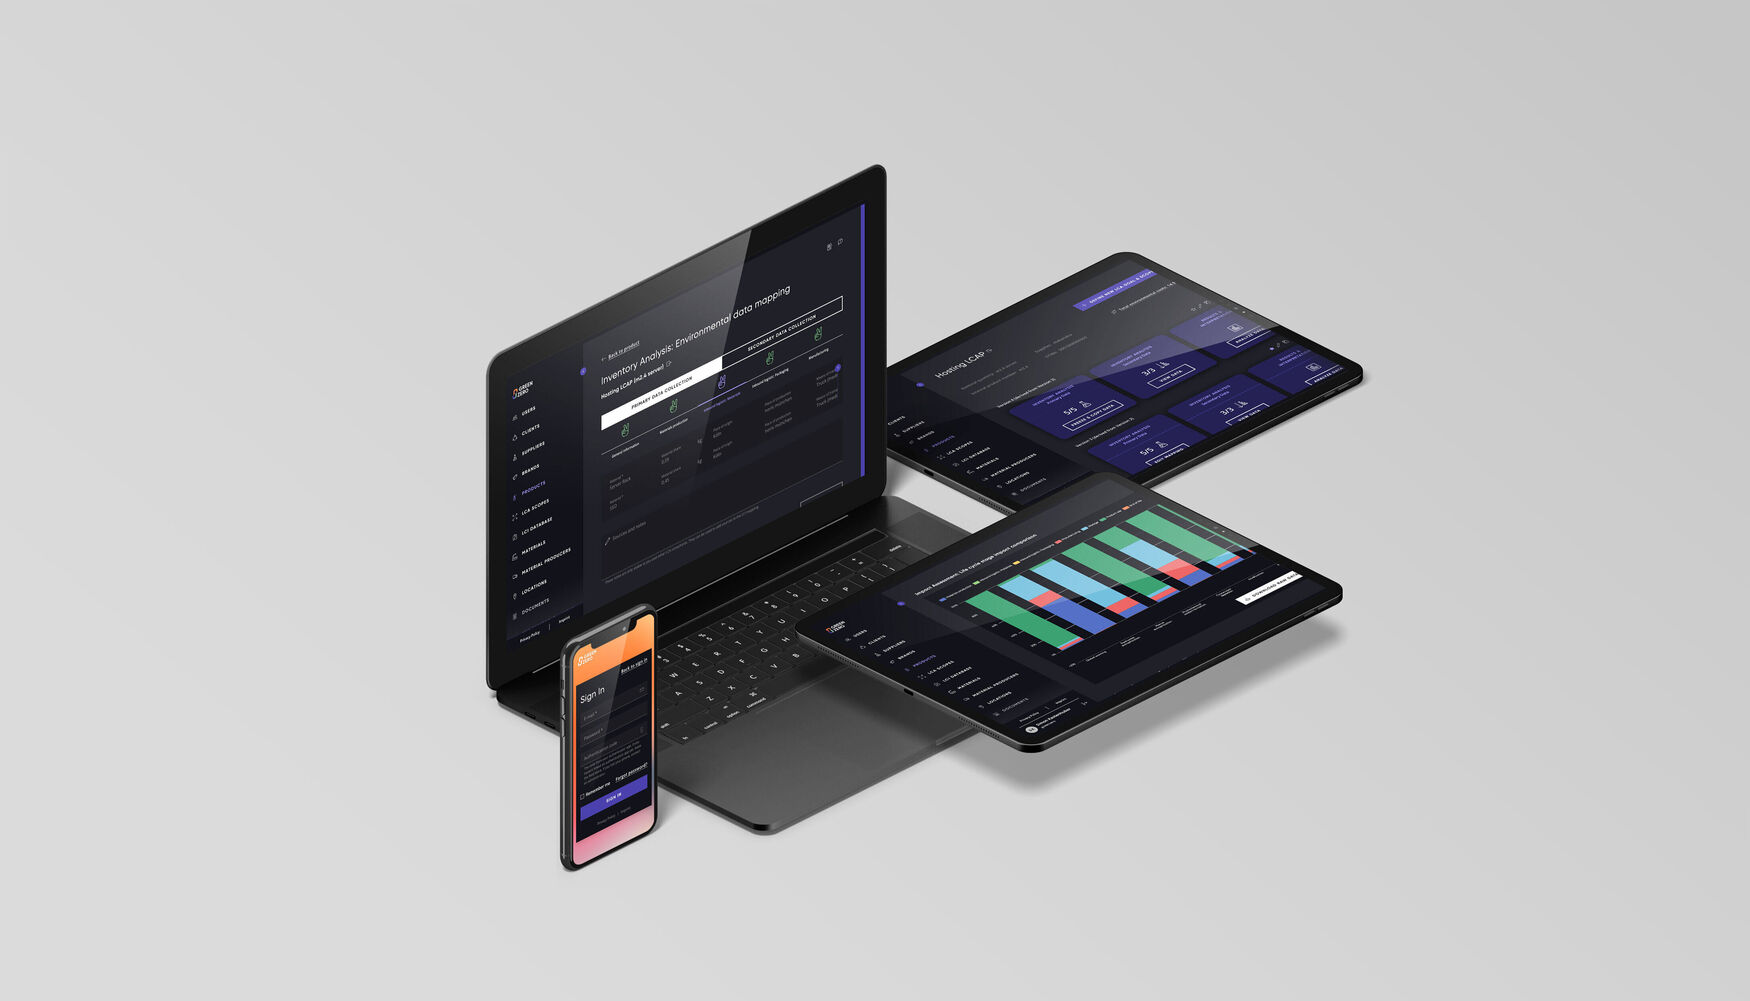 GREENZERO: Bild von Laptop, Handy und zwei Tablets, die Inventory Analysis anzeigt.